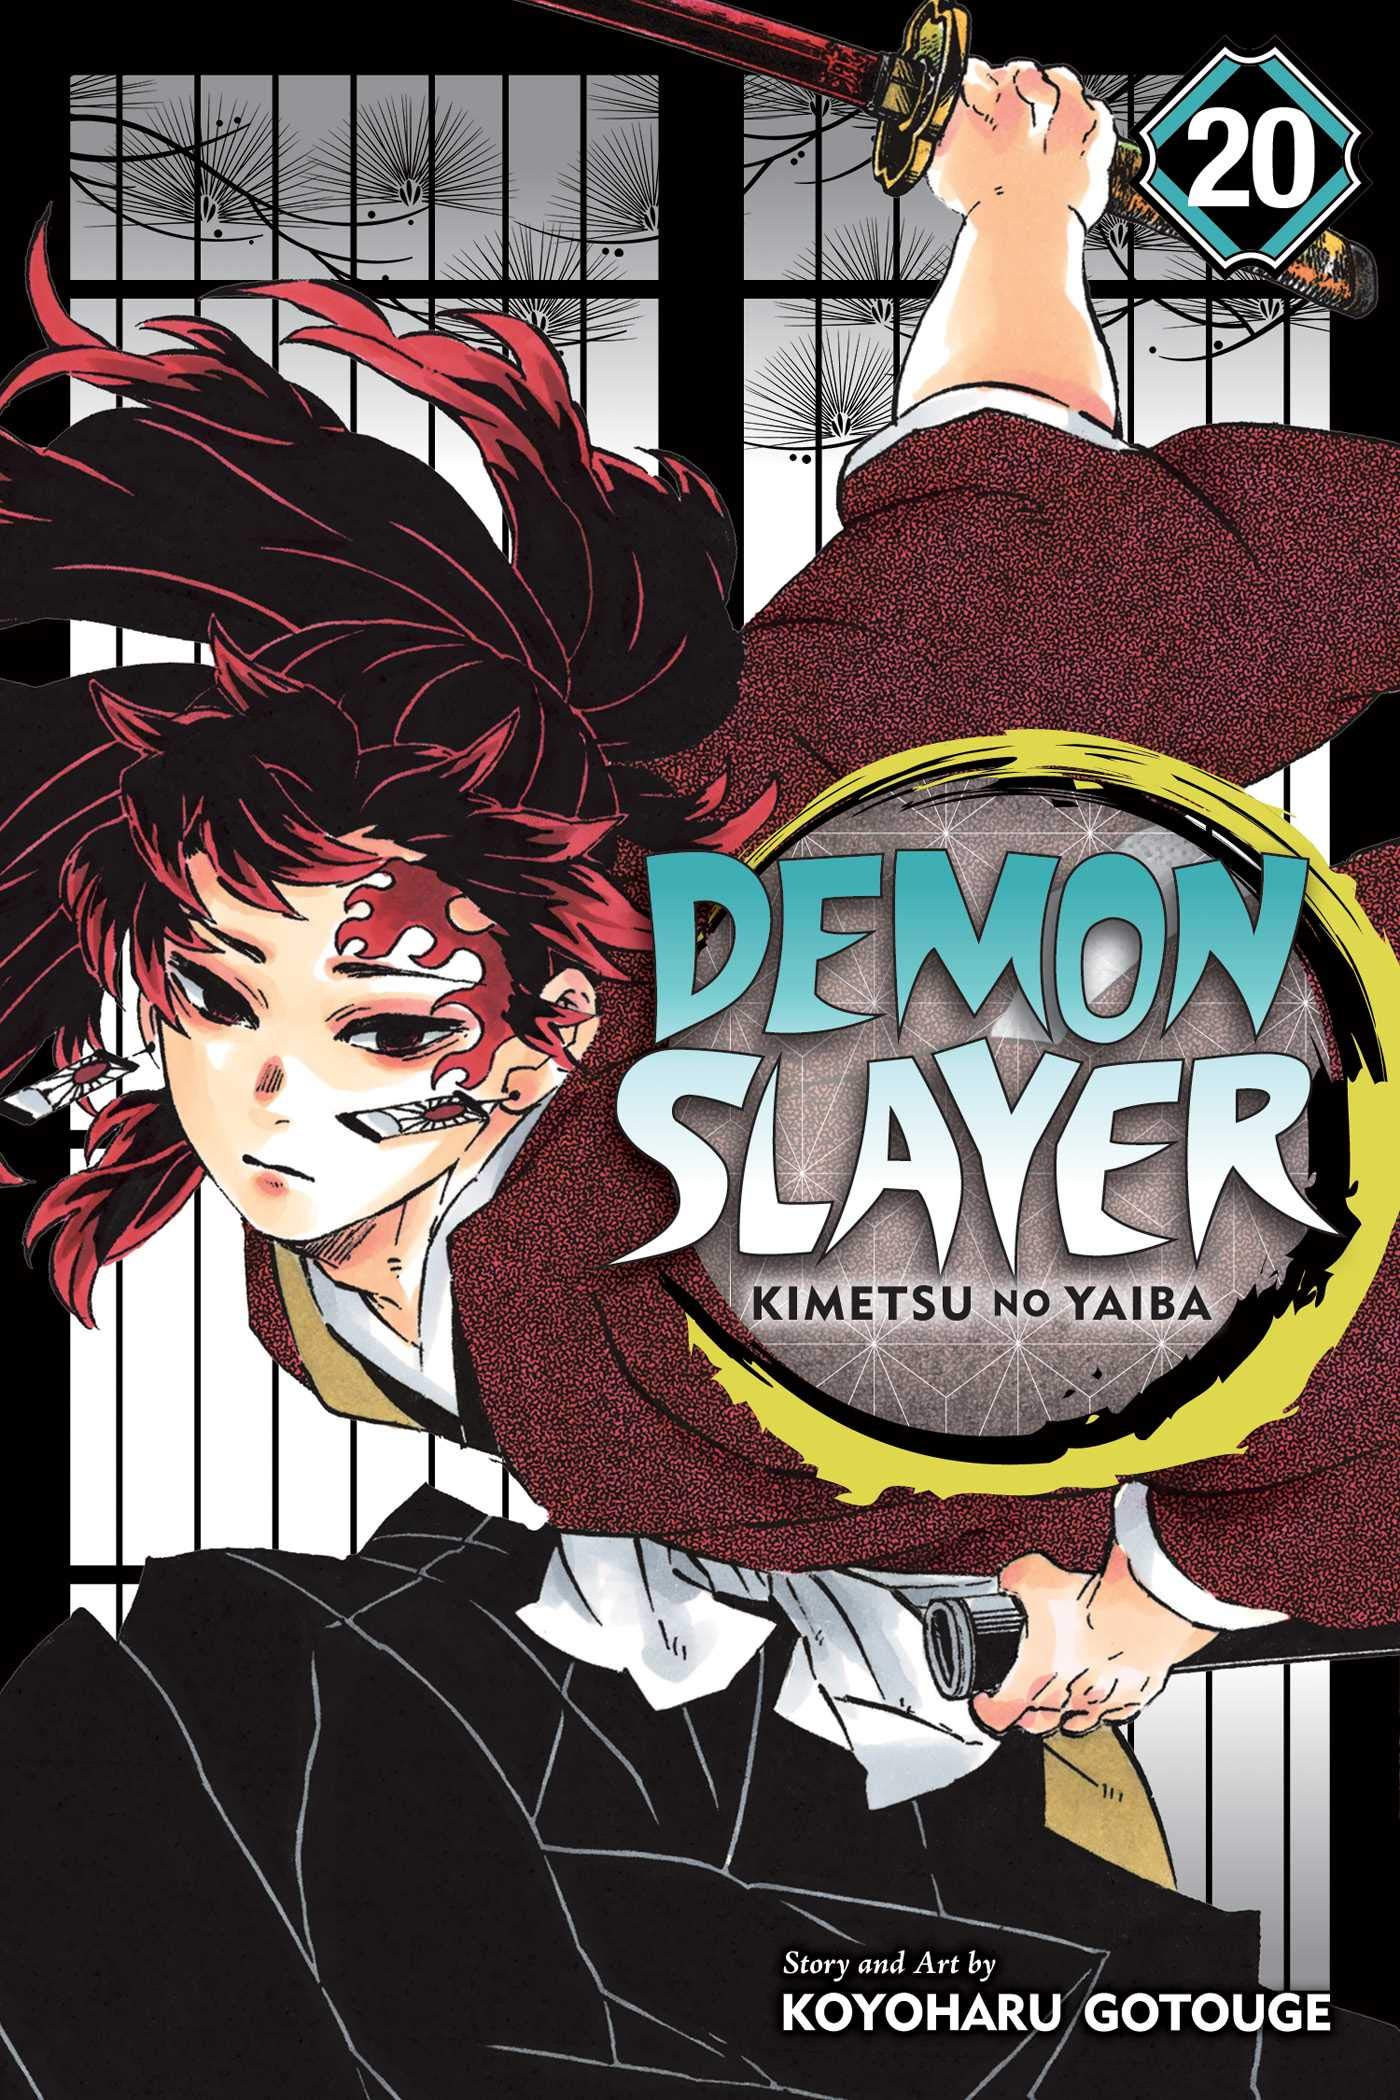 Demon Slayer Kimetsu No Yaiba Season 1-2 + Movies 2 In 1 Anime DVD [Free  Gift]